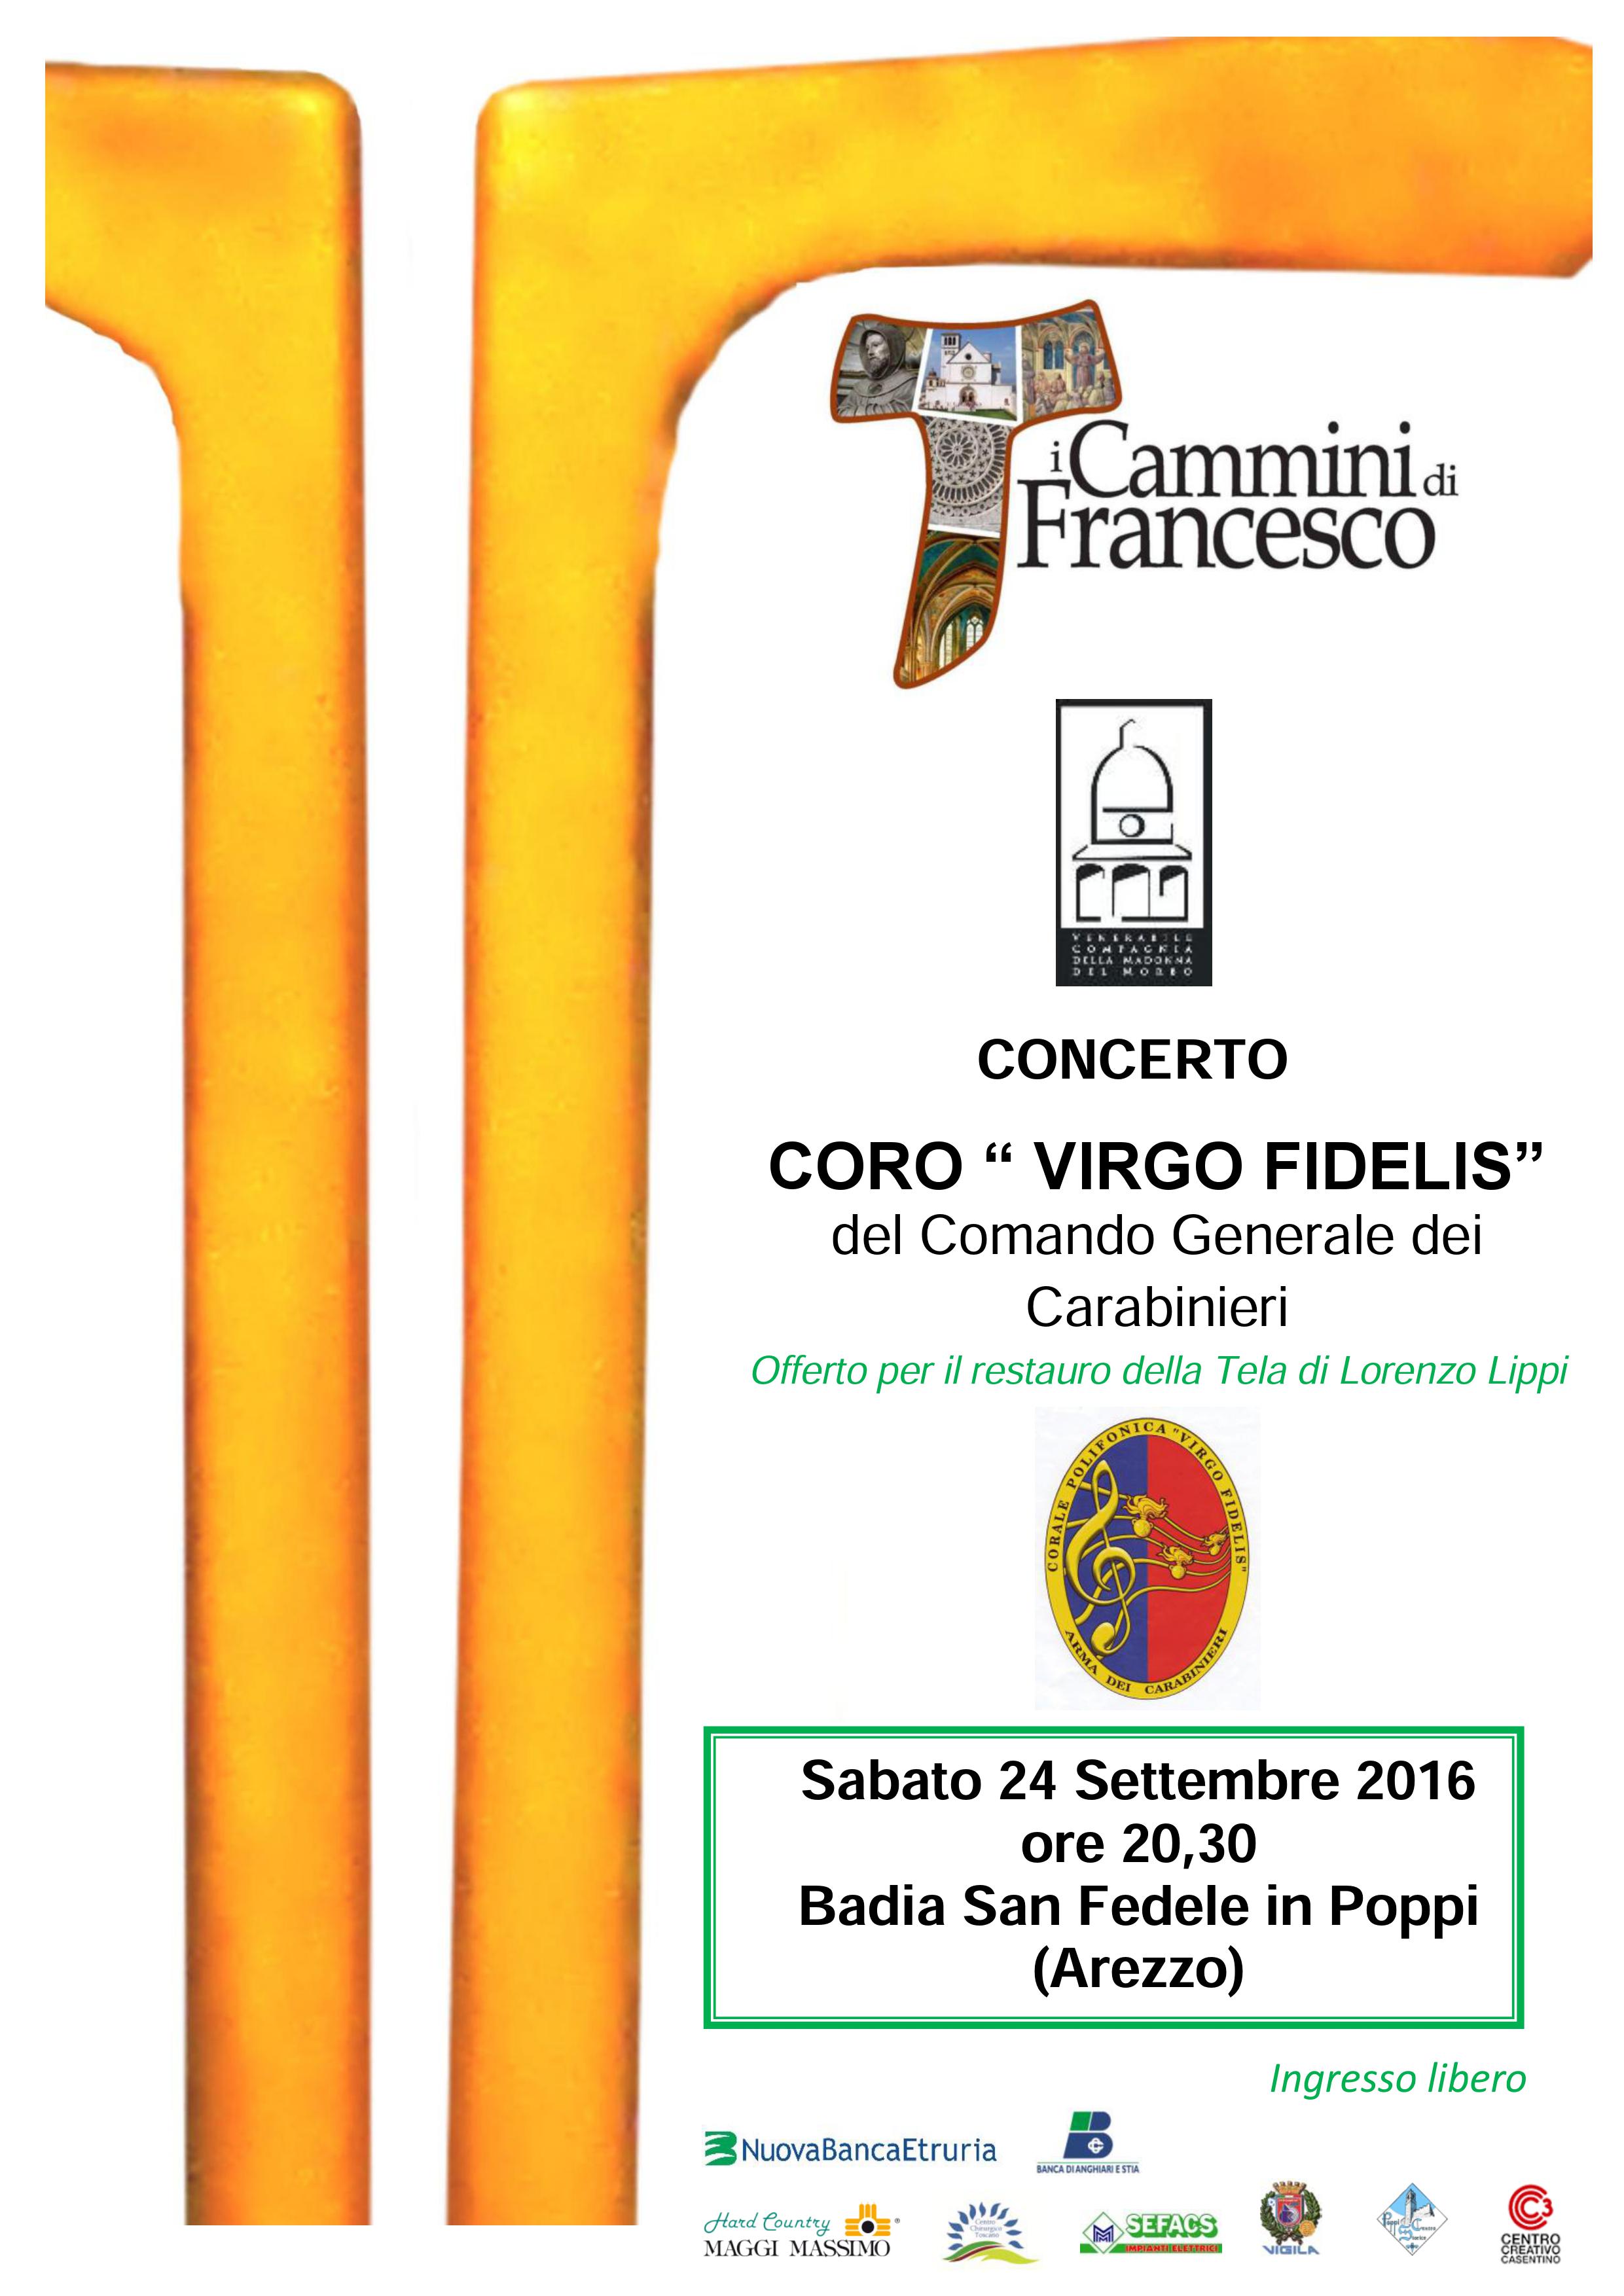 CONCERTO CORO “VIRGO FIDELIS” 24 settembre 2016